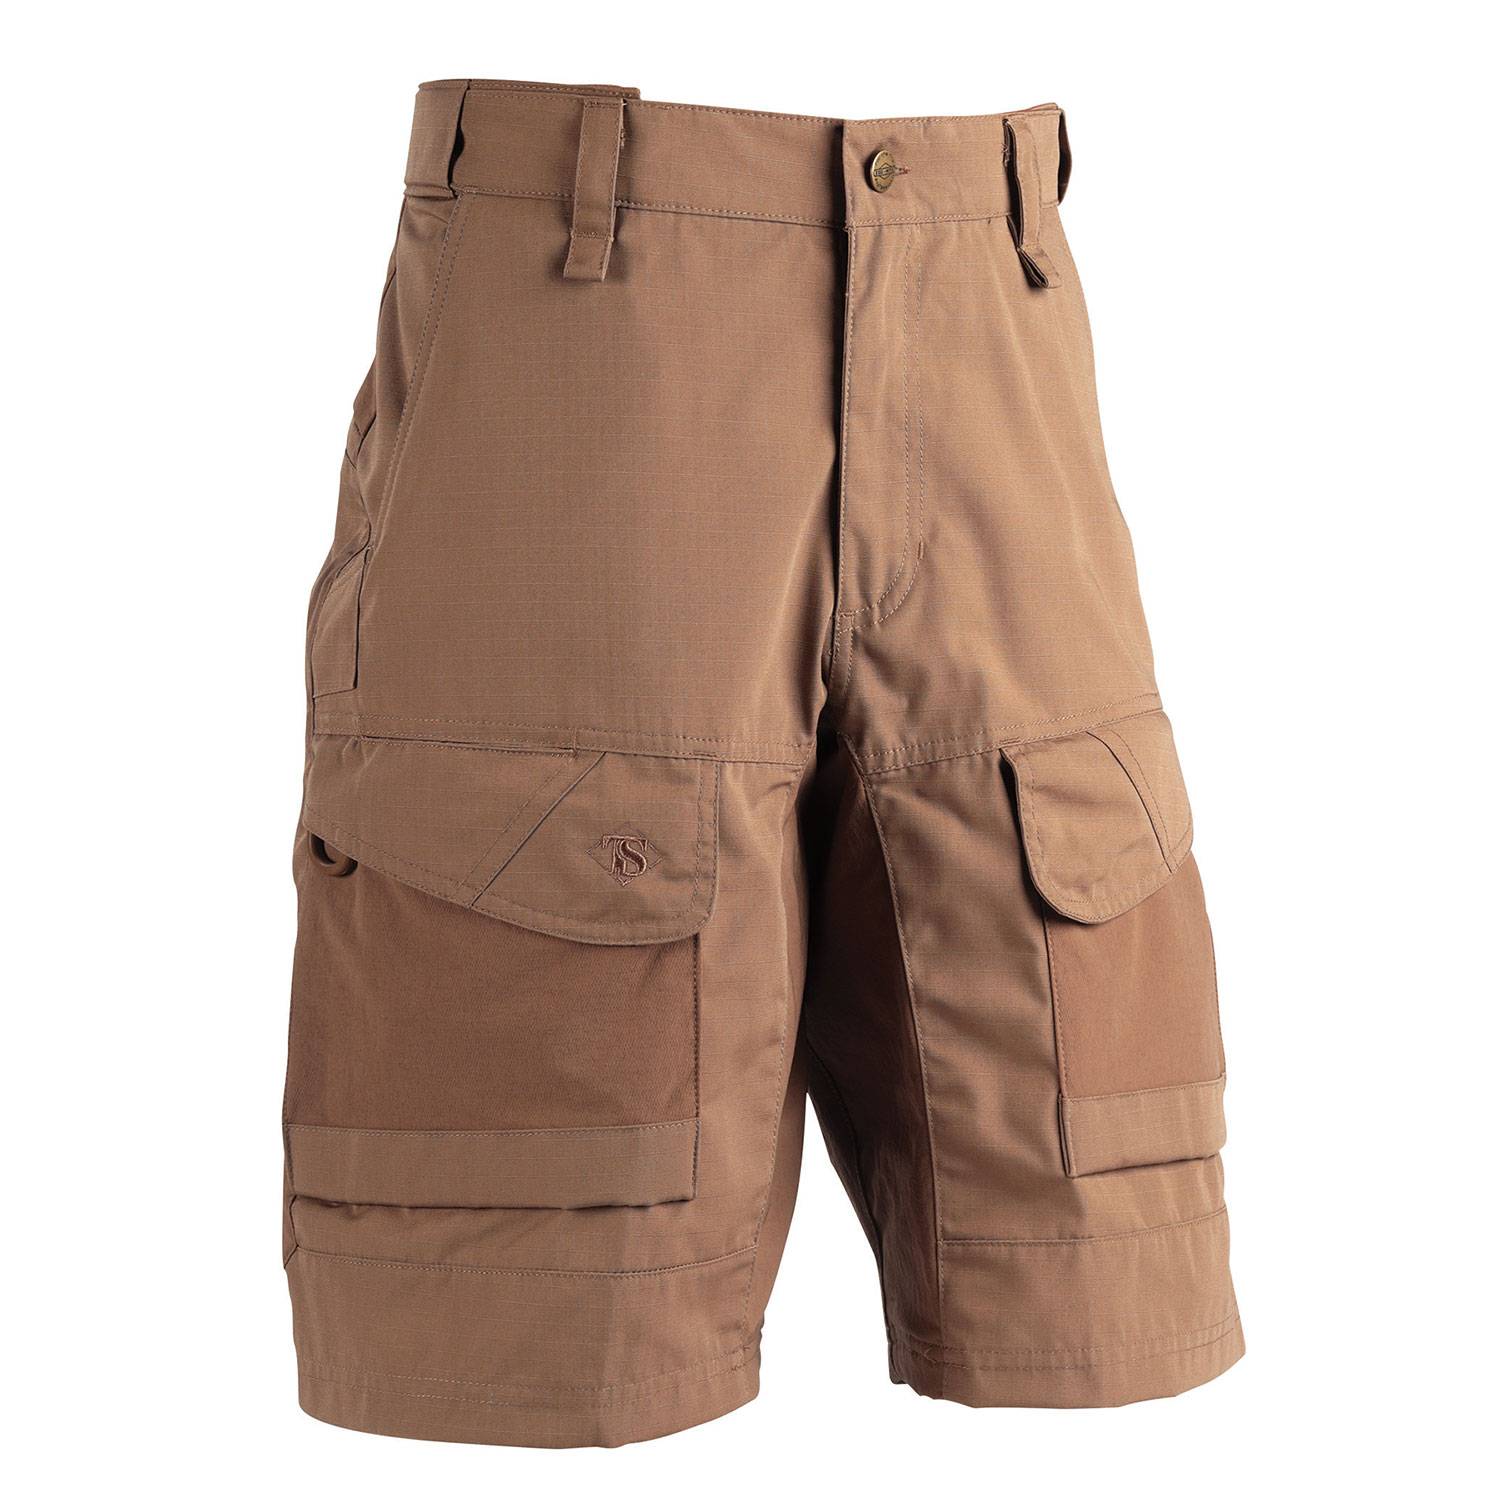 TRU-SPEC 24-7 Xpedition Shorts